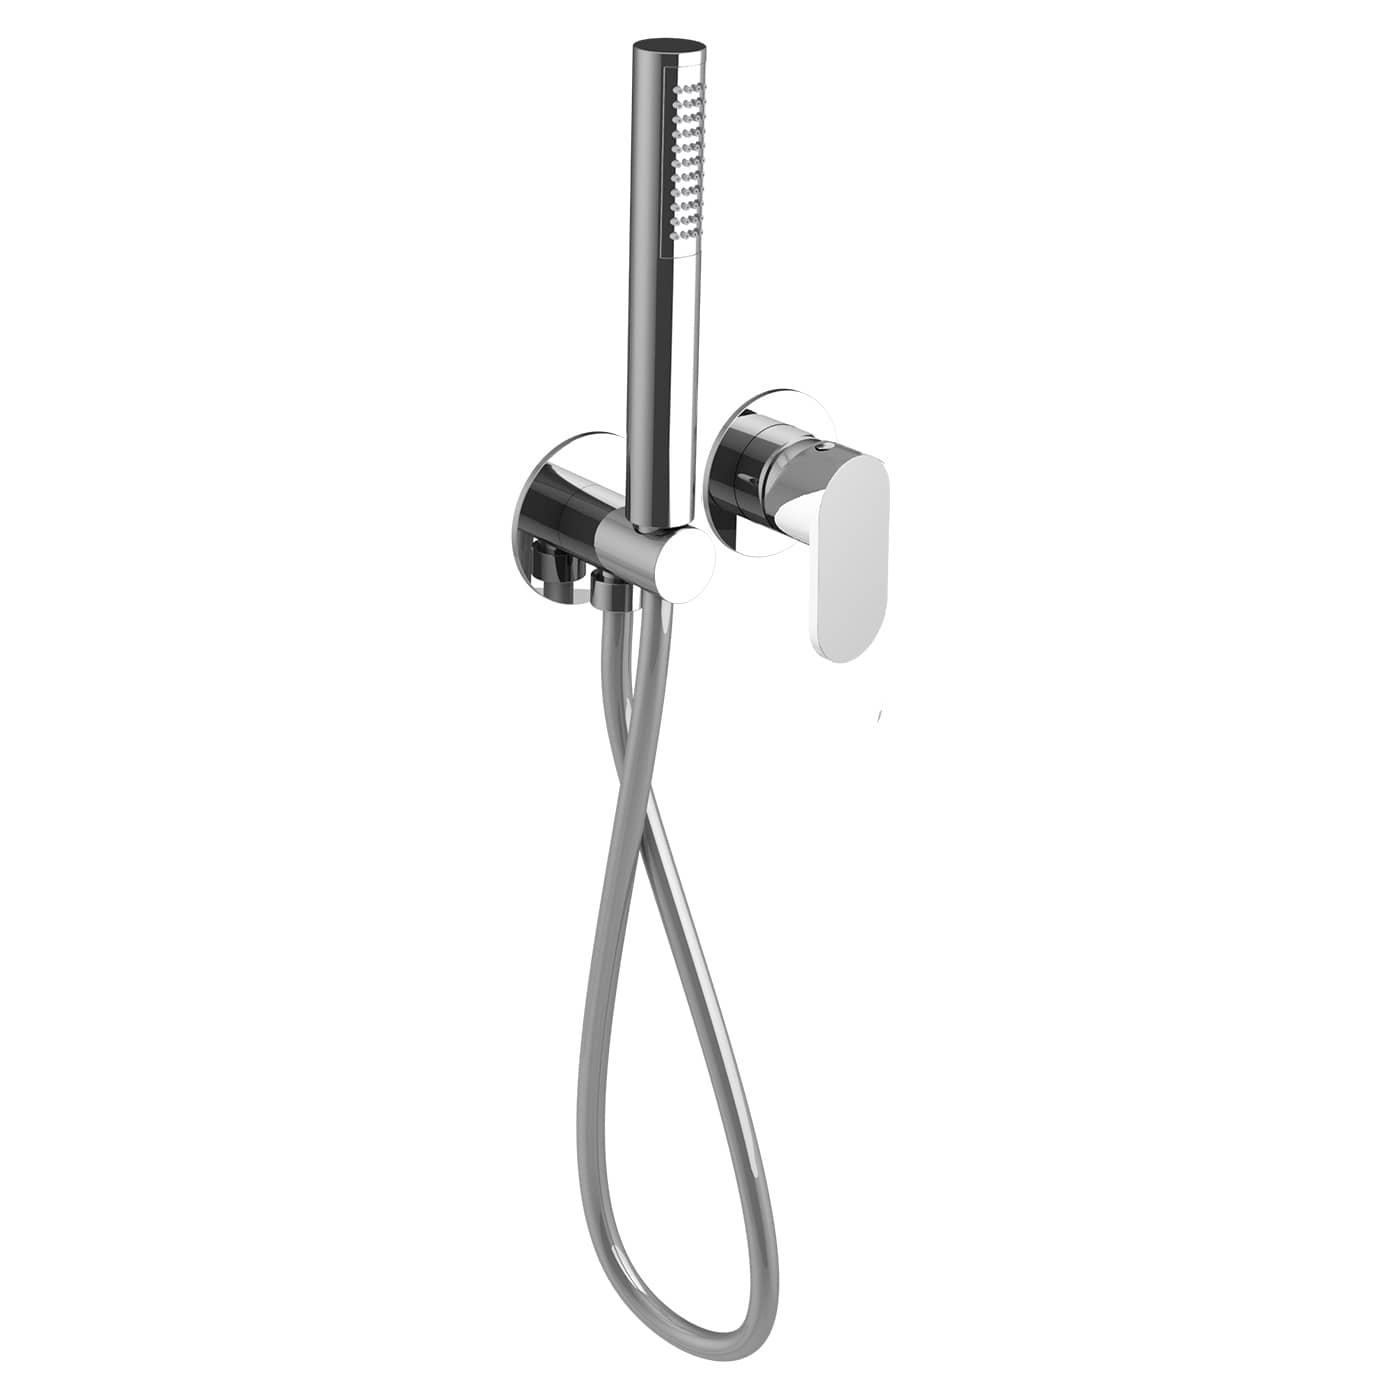 VIED130RO - Parti esterne per miscelatore incasso doccia con kit doccia